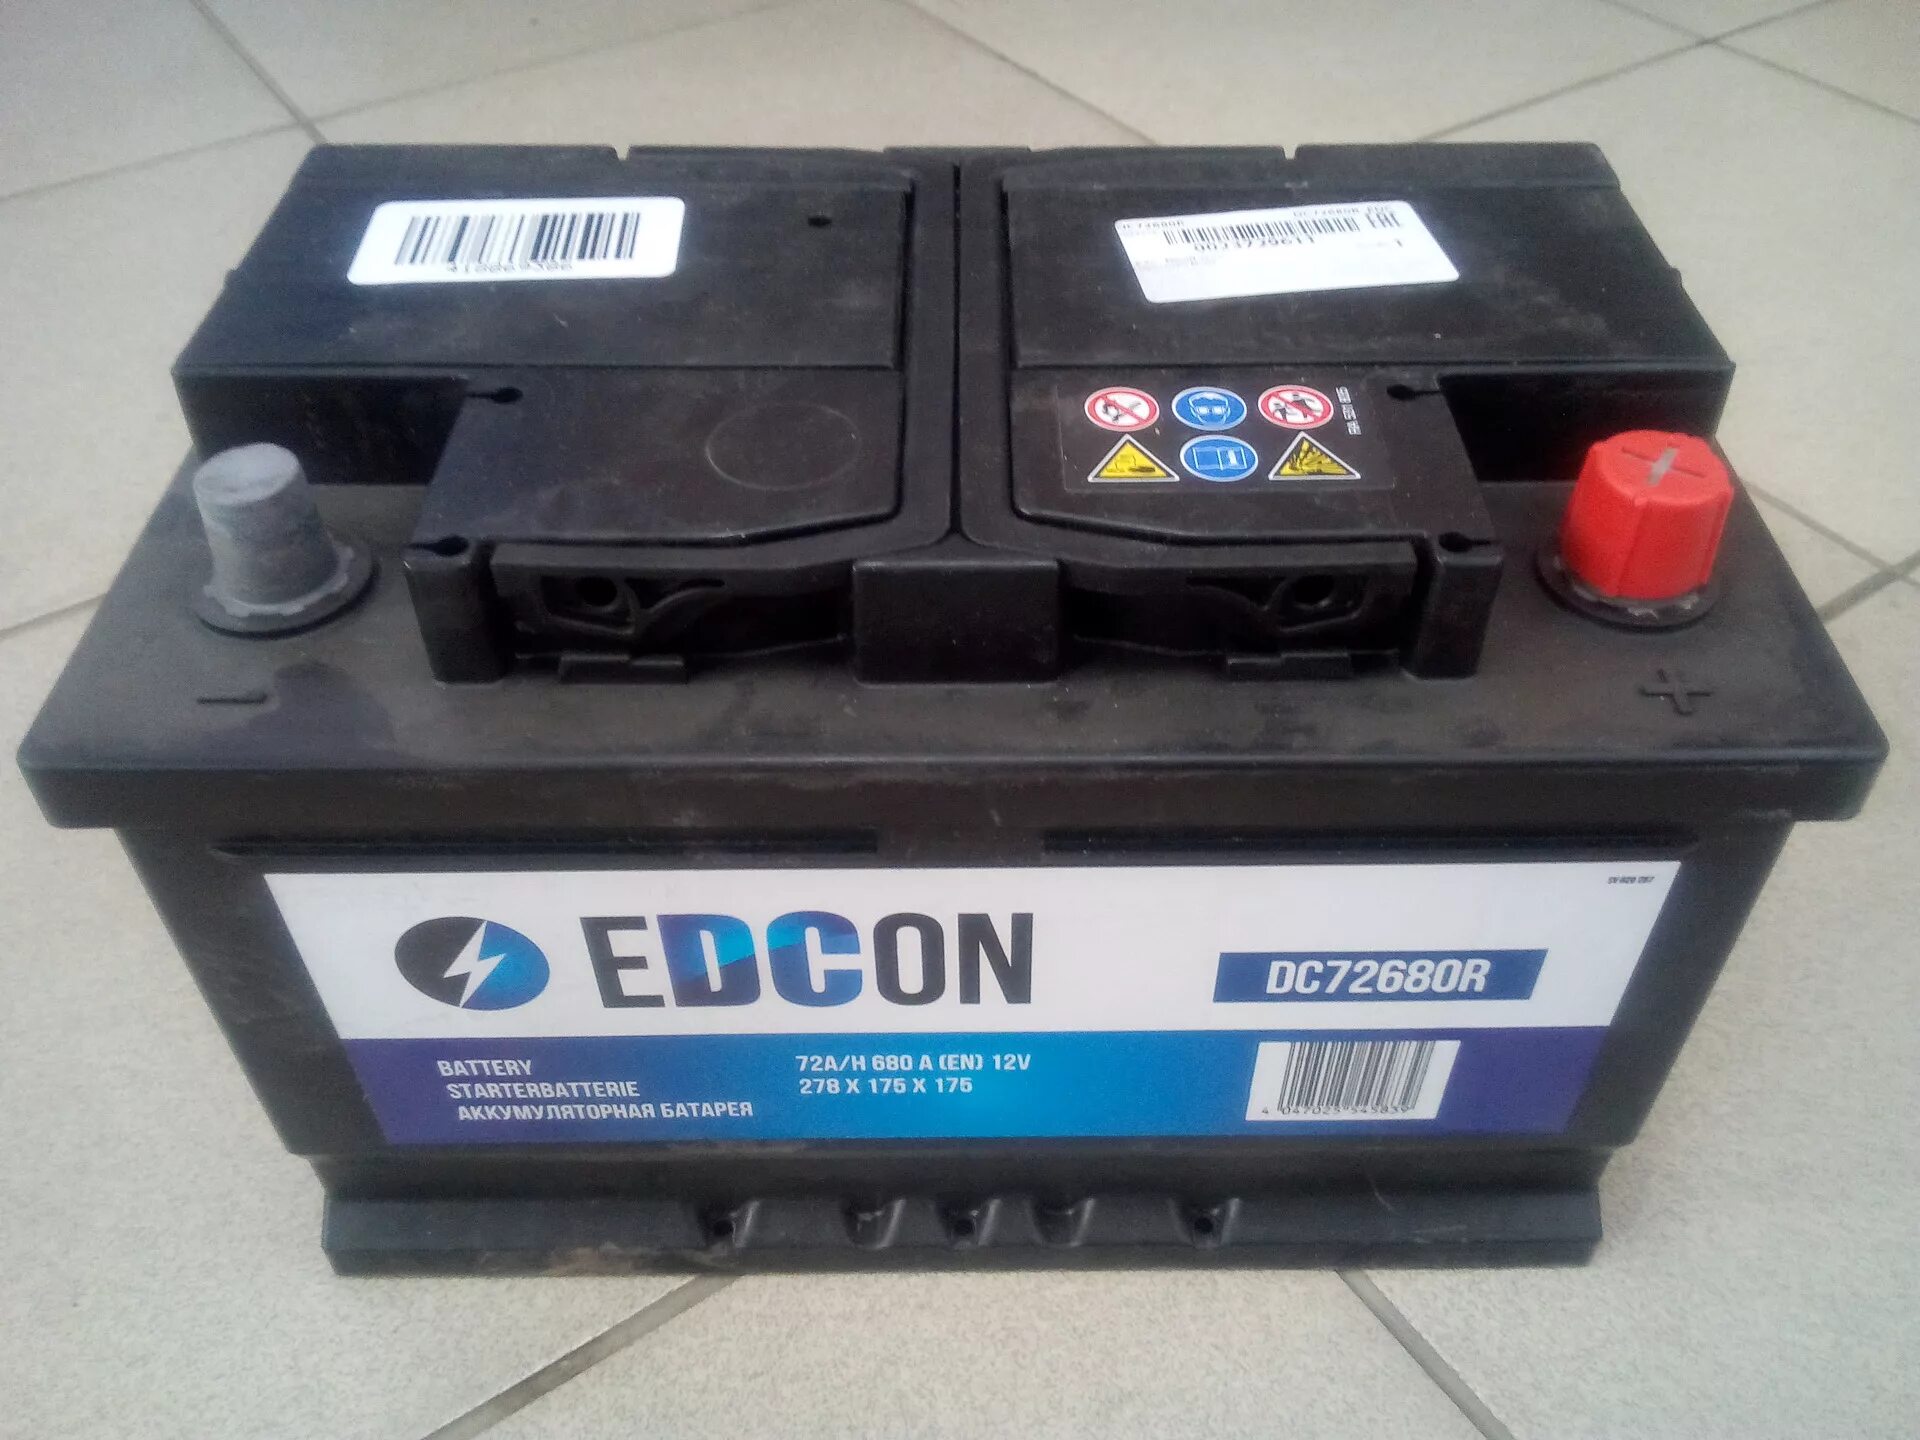 Edcon dc35300r. АКБ полярность прямая и Обратная. Полярность автомобильного аккумулятора прямая и Обратная. Обратная полярность аккумулятора.